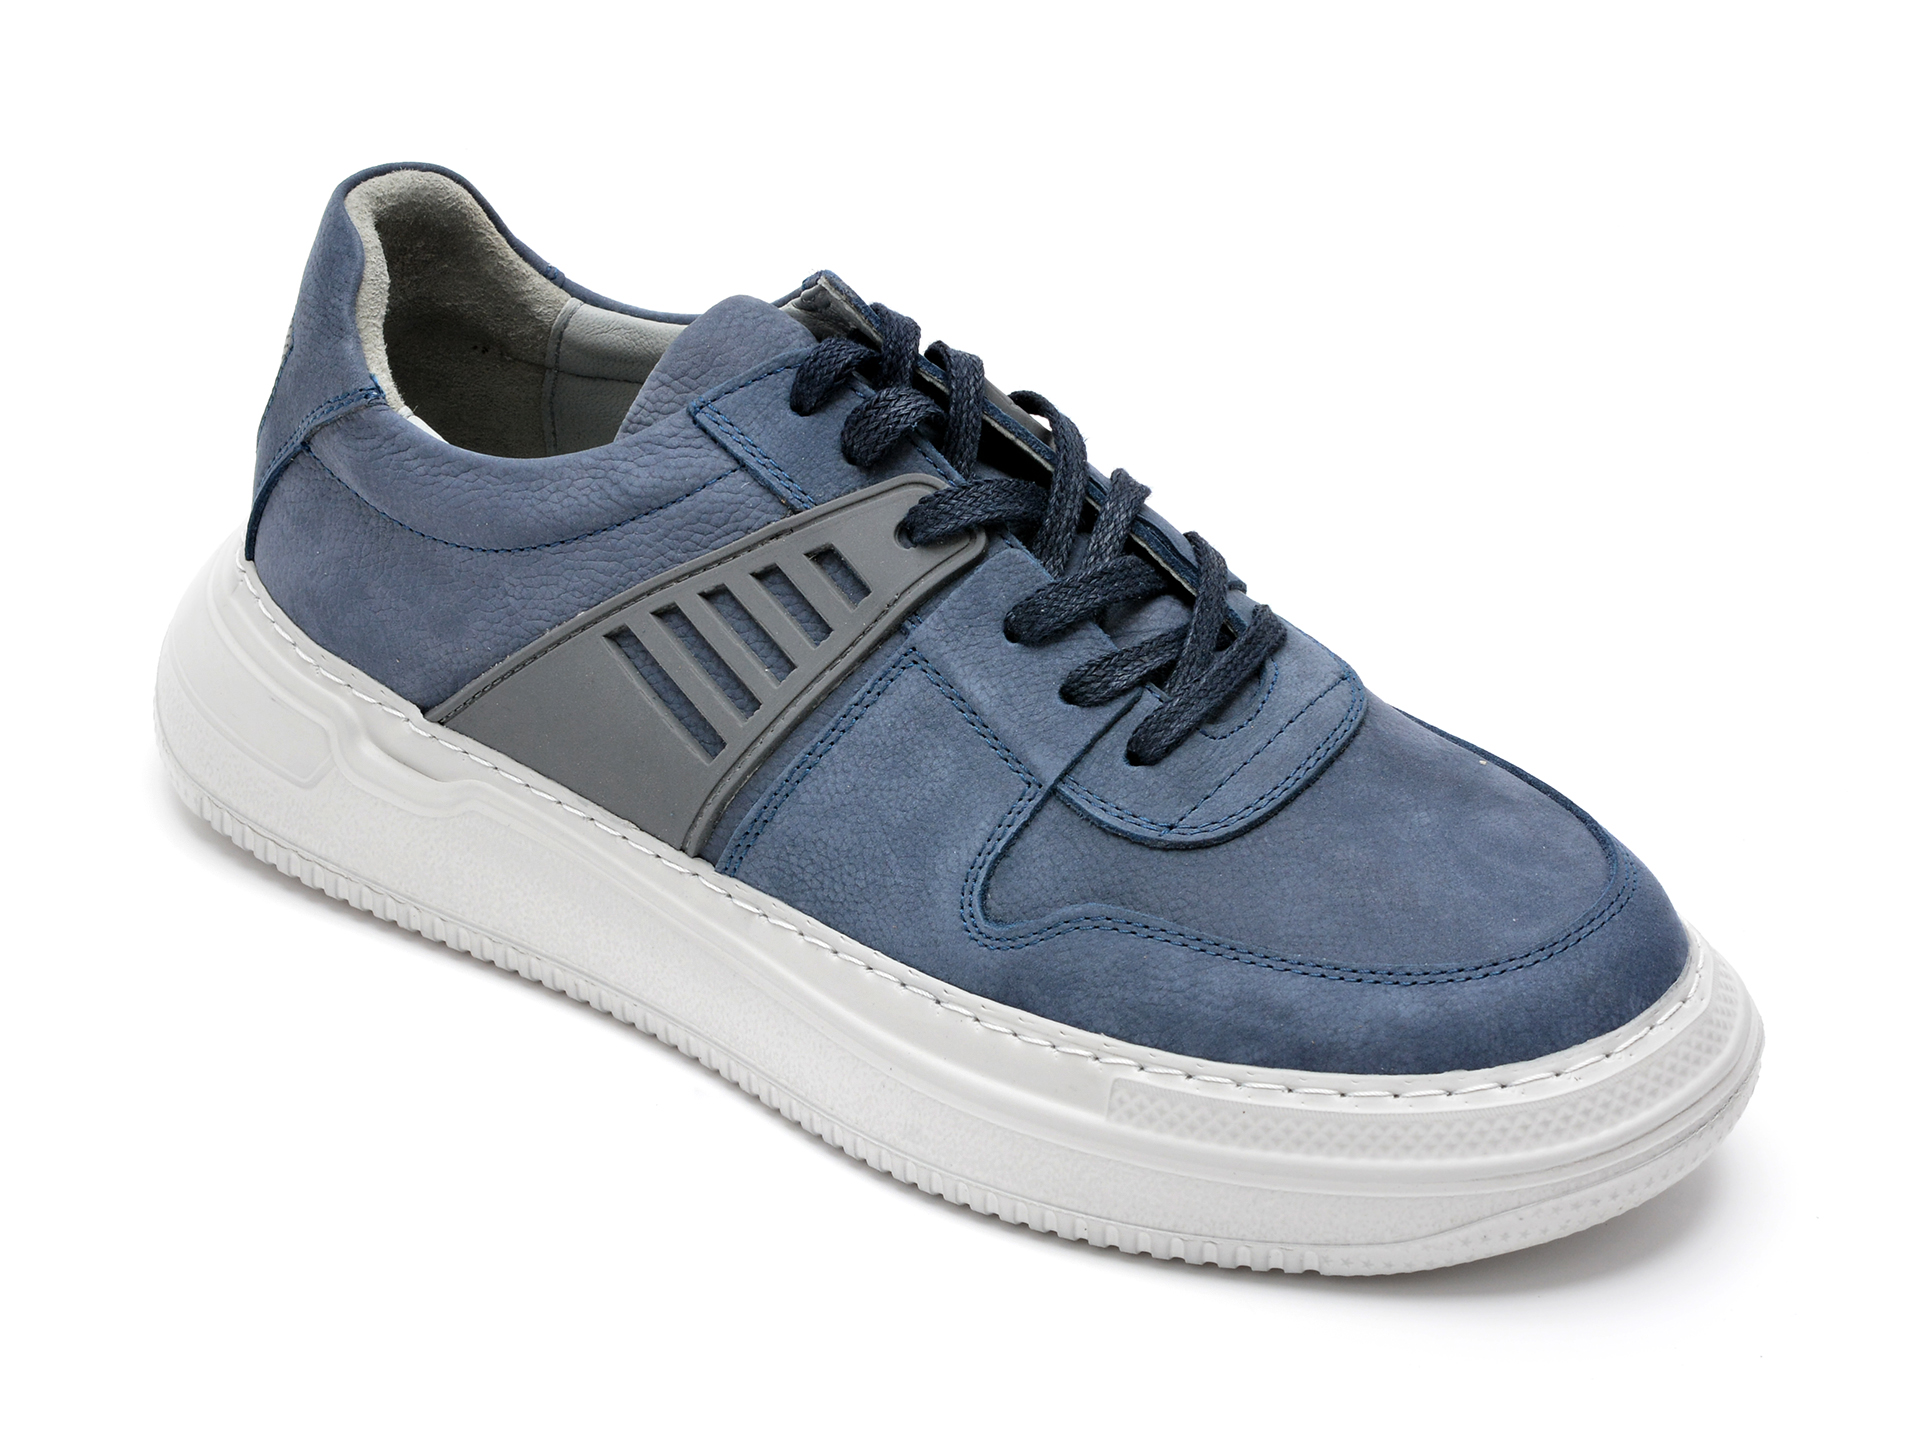 Pantofi OTTER albastri, 13103, din nabuc 2022 ❤️ Pret Super Black Friday otter.ro imagine noua 2022